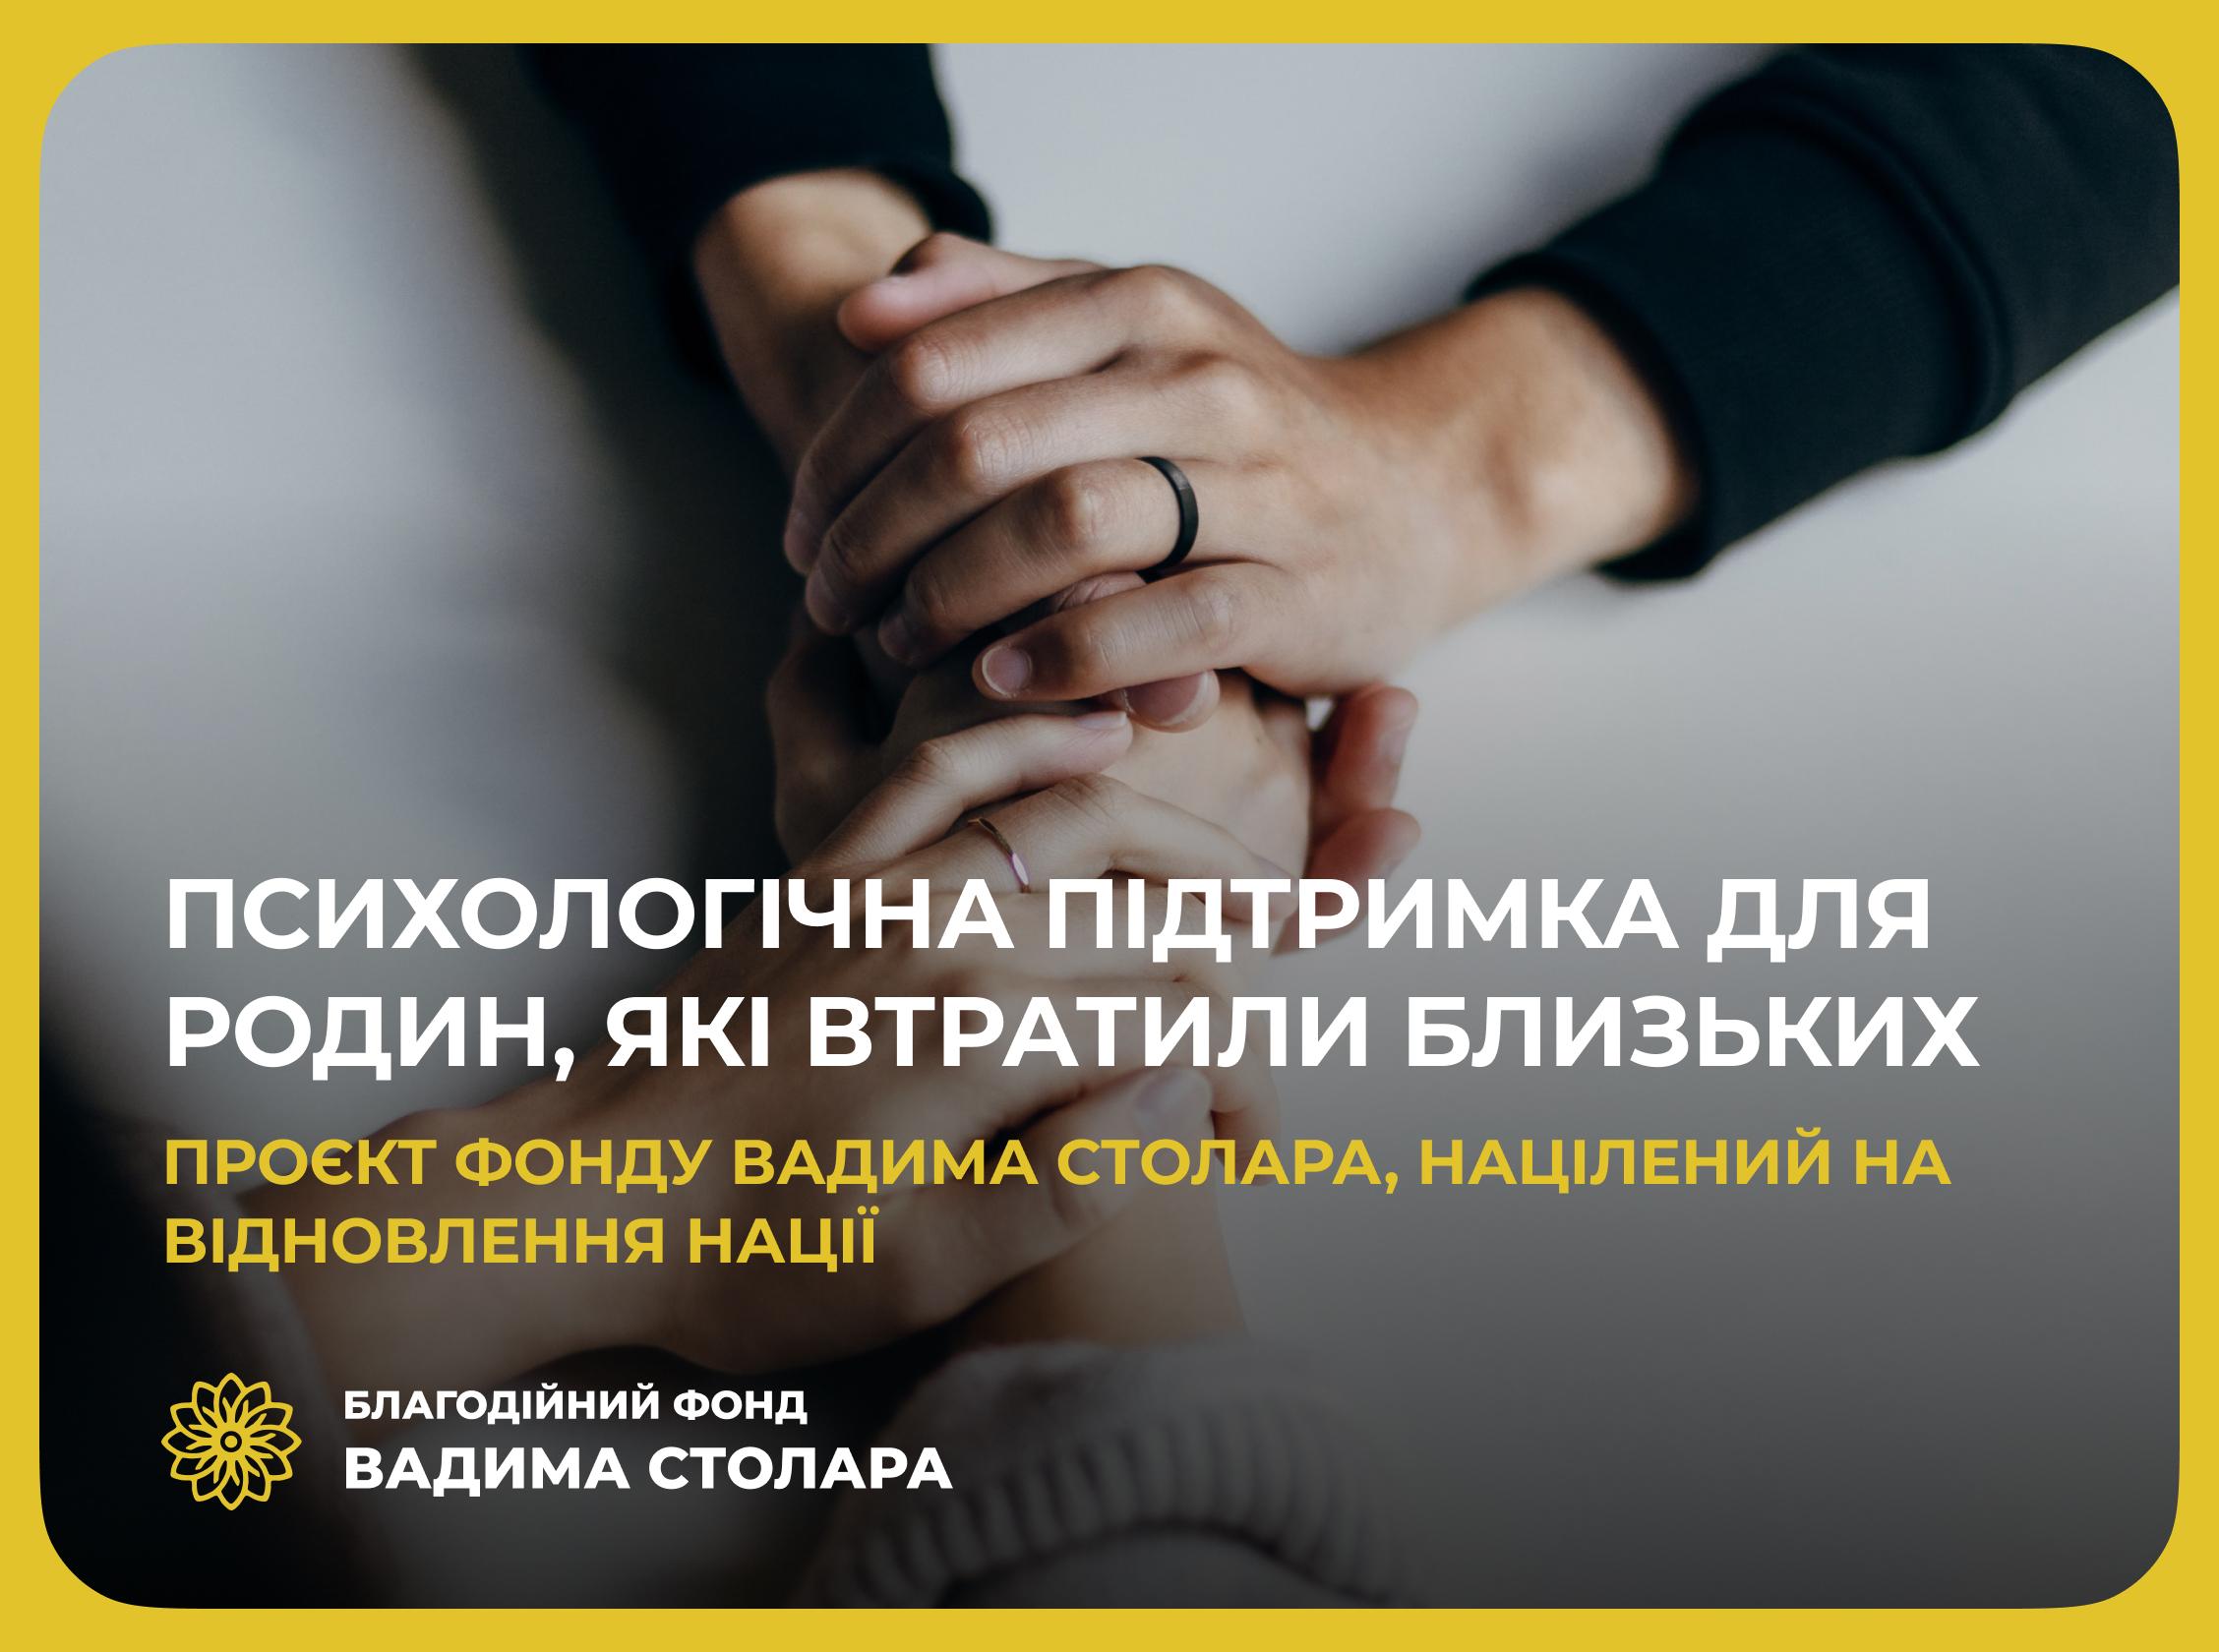 Психологічна підтримка для родин, які втратили близьких, – проєкт Фонду Вадима Столара, націлений на відновлення нації